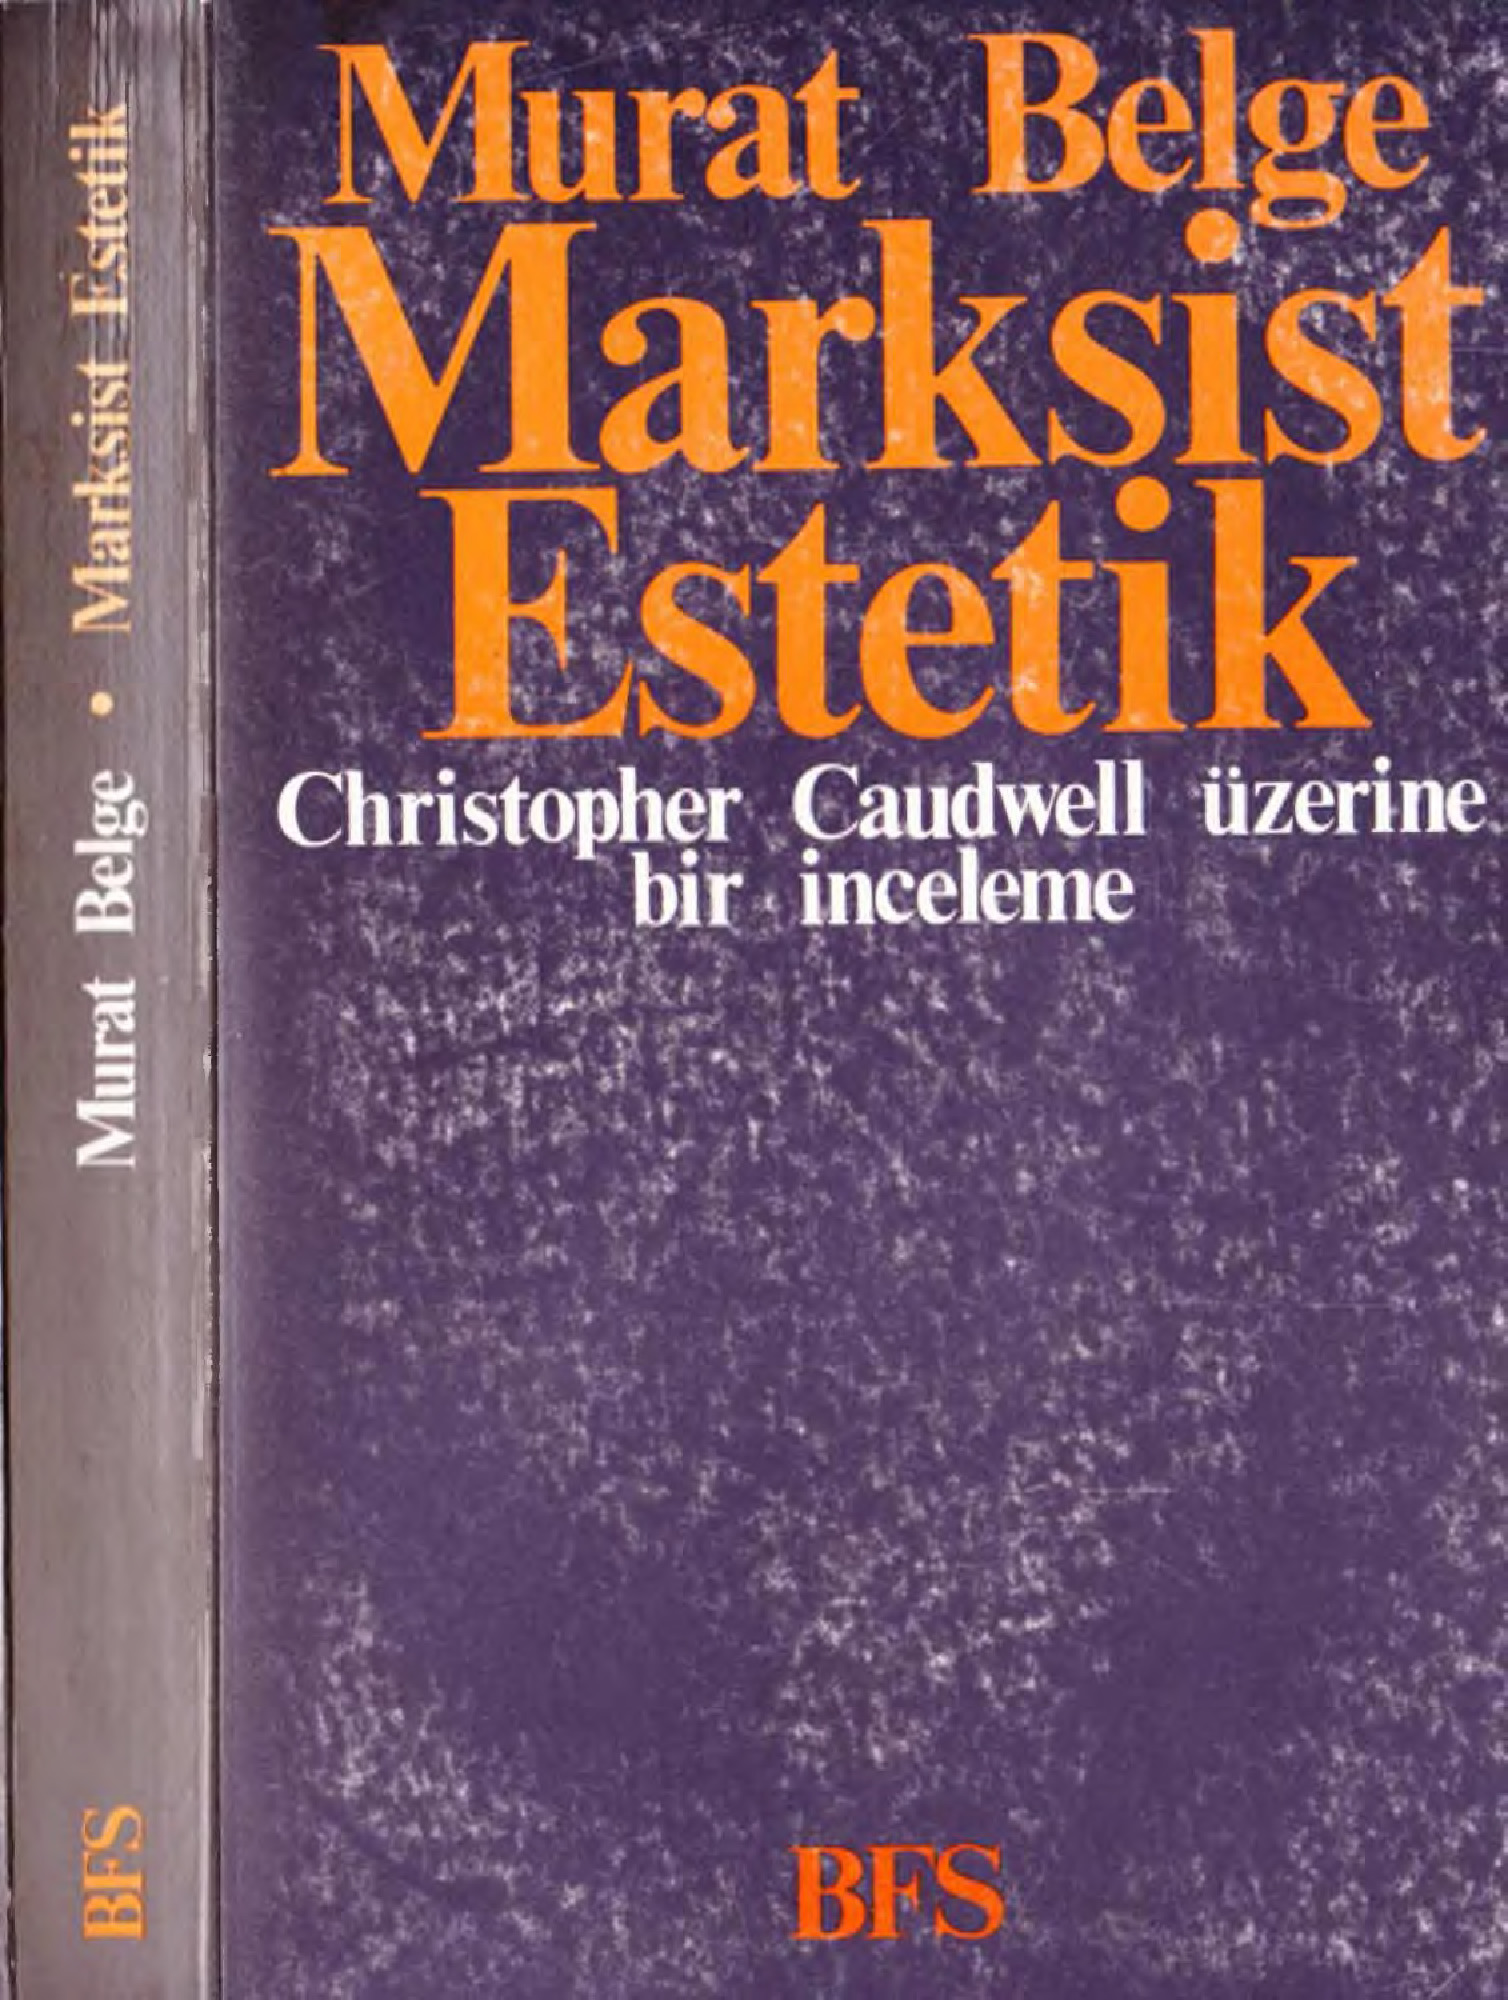 Marksist Istetik-Christofer Caudwell Üzerine Bir Inceleme-Murad Belge-1989-340s